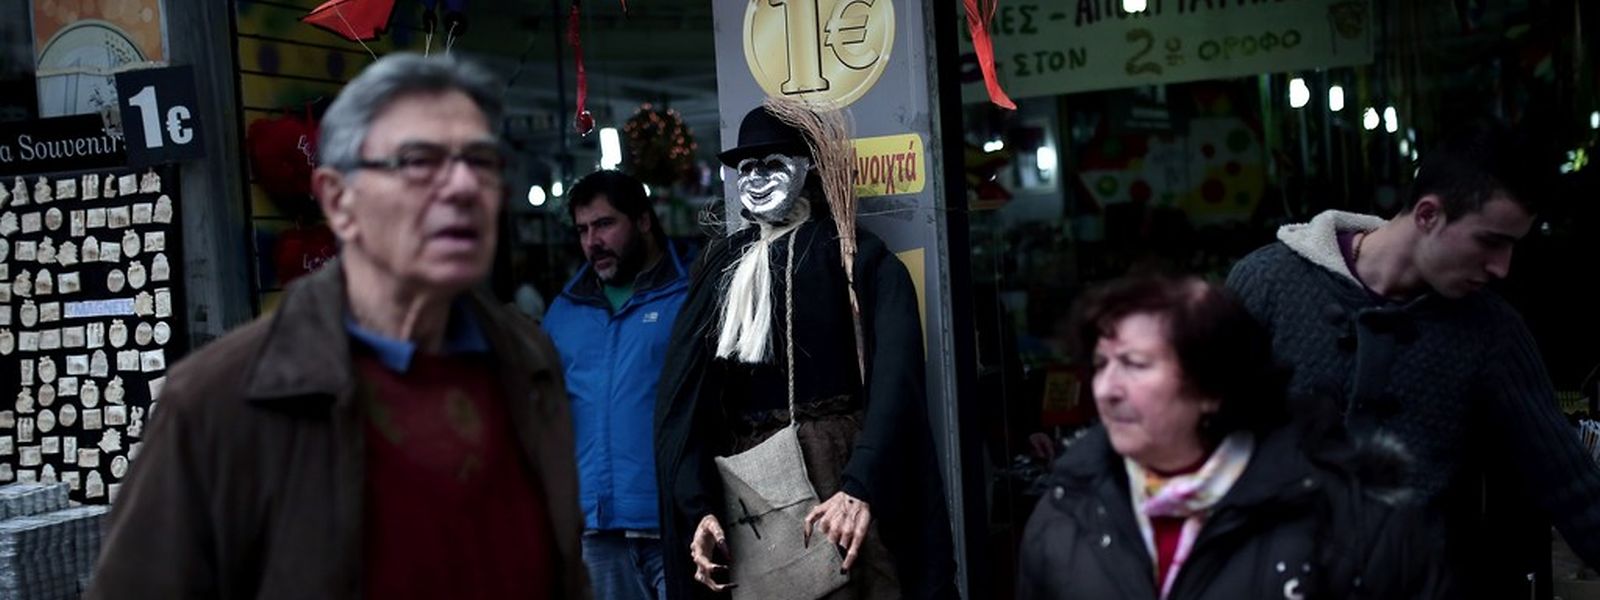 Griechen gehen an einem Ein-Euro-Shop vorbei. Am Sonntag reichte Finanzminister Varoufakis seine Reformvorschläge ein.